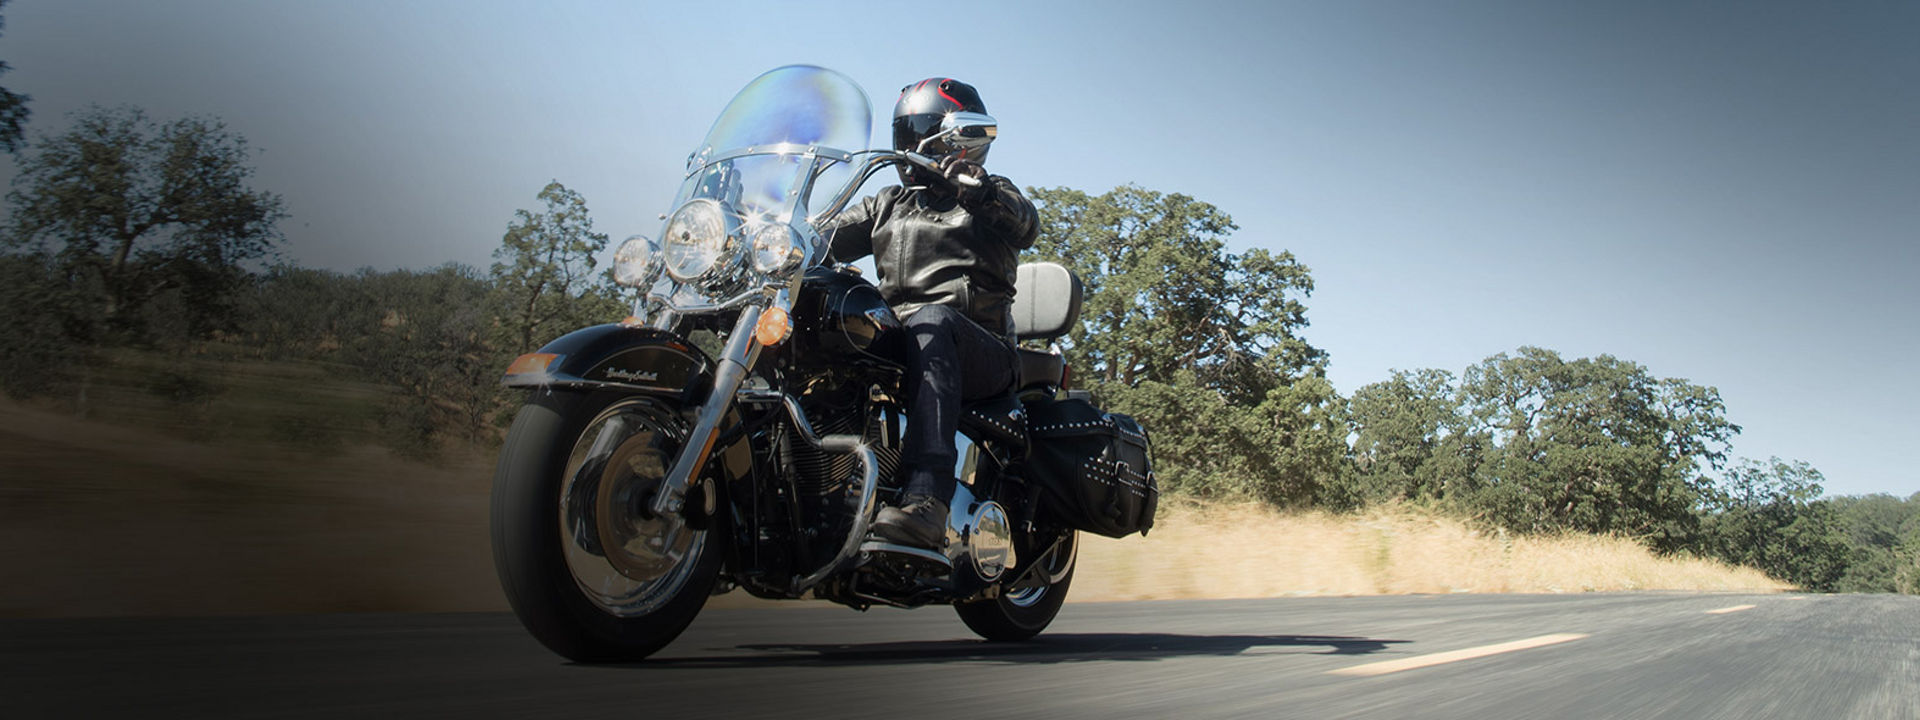 L'immagine mostra un motociclista dotato di pneumatici Bridgestone per moto Custom.